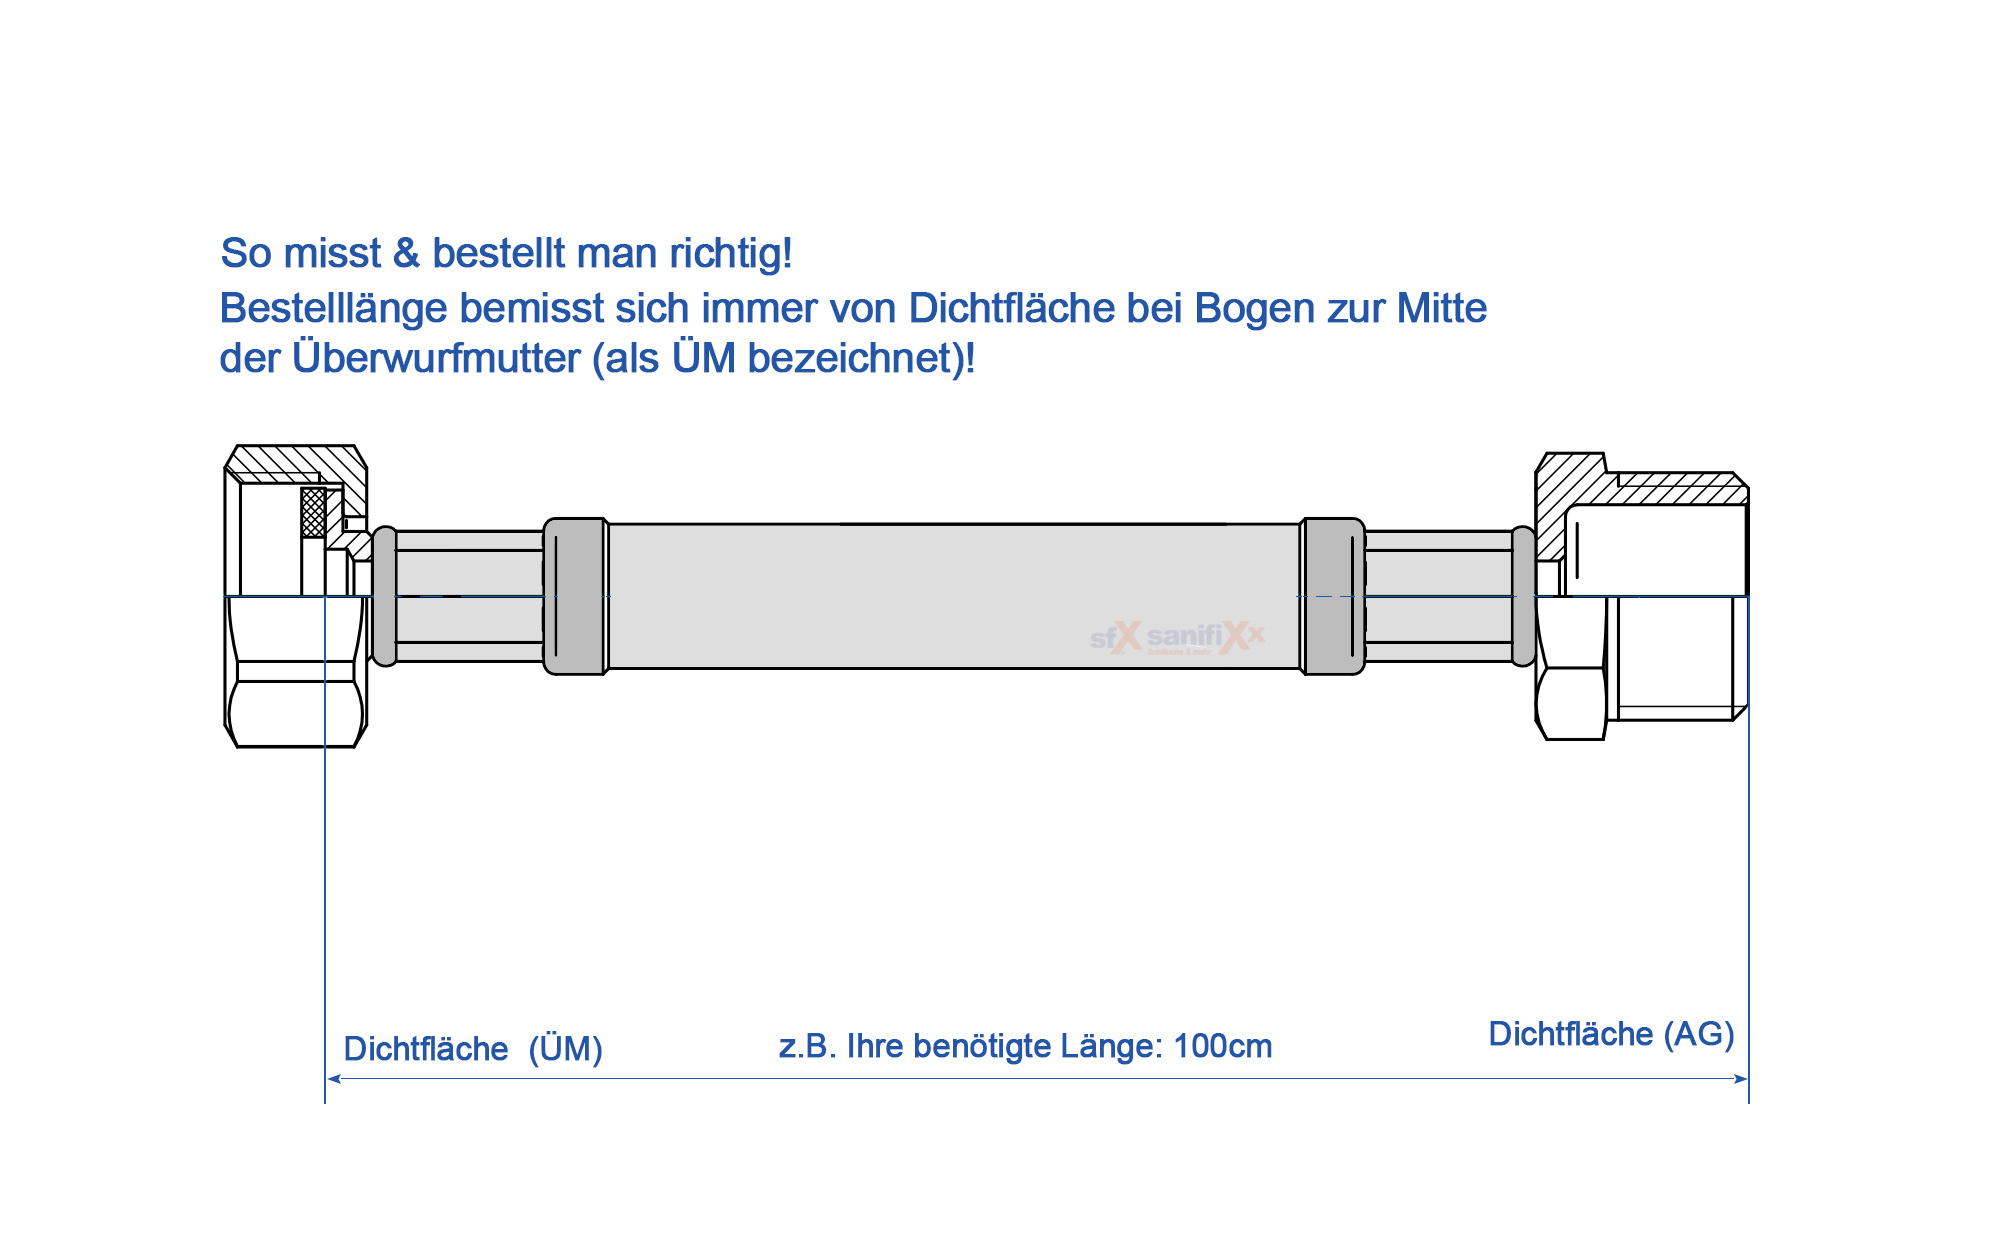 SFX® Edelstahl Panzerschlauch DN32 - 1.1/4 ÜM x 1.1/4 AG - Druckschlauch  - Saugpumpe - Brunnenpumpe - Saugschlauch